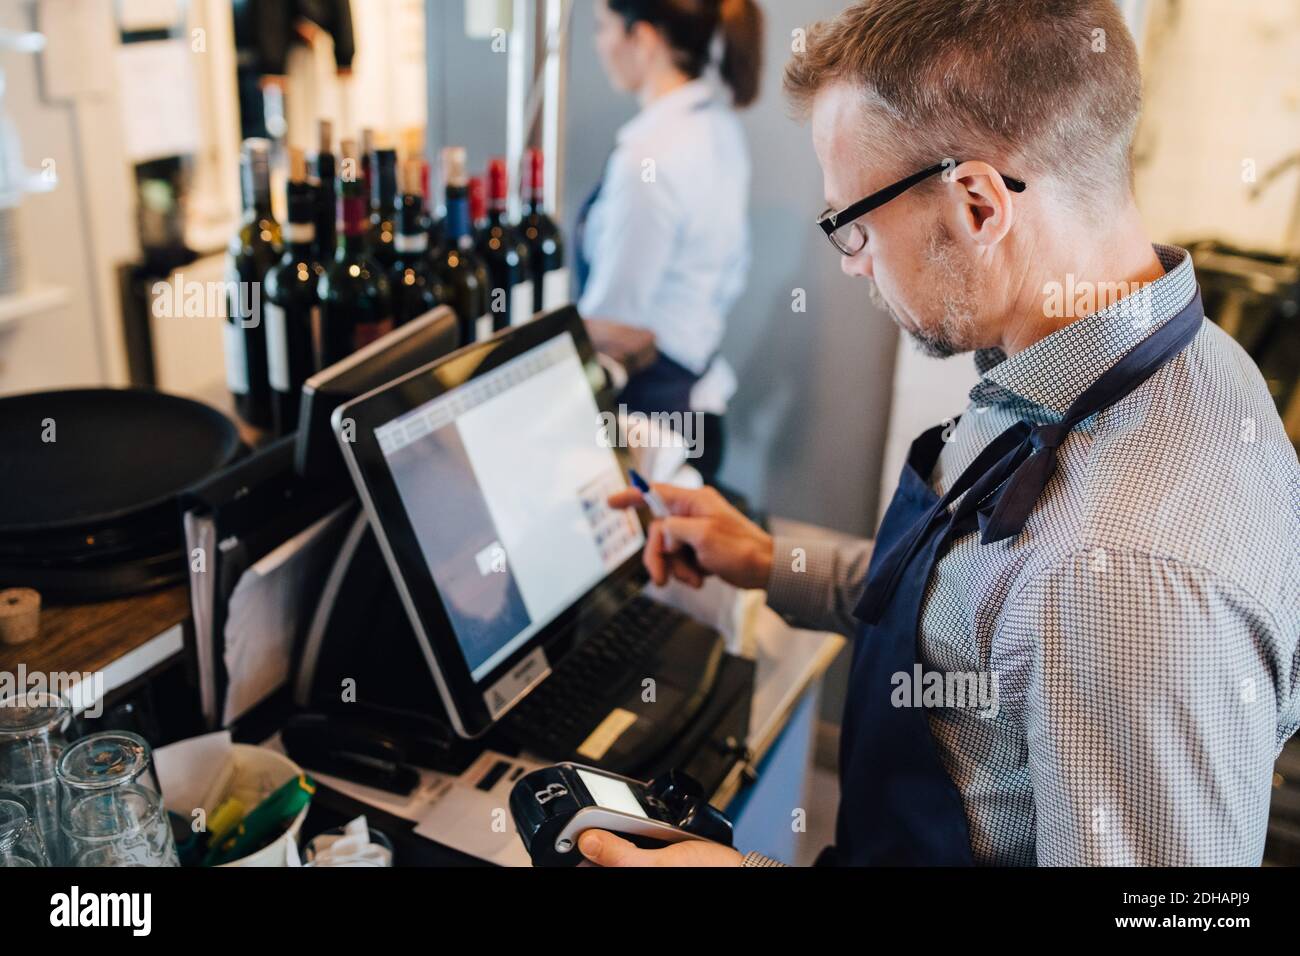 Besitzer mit Computer, während die Kreditkarte Leser im Restaurant Stockfoto